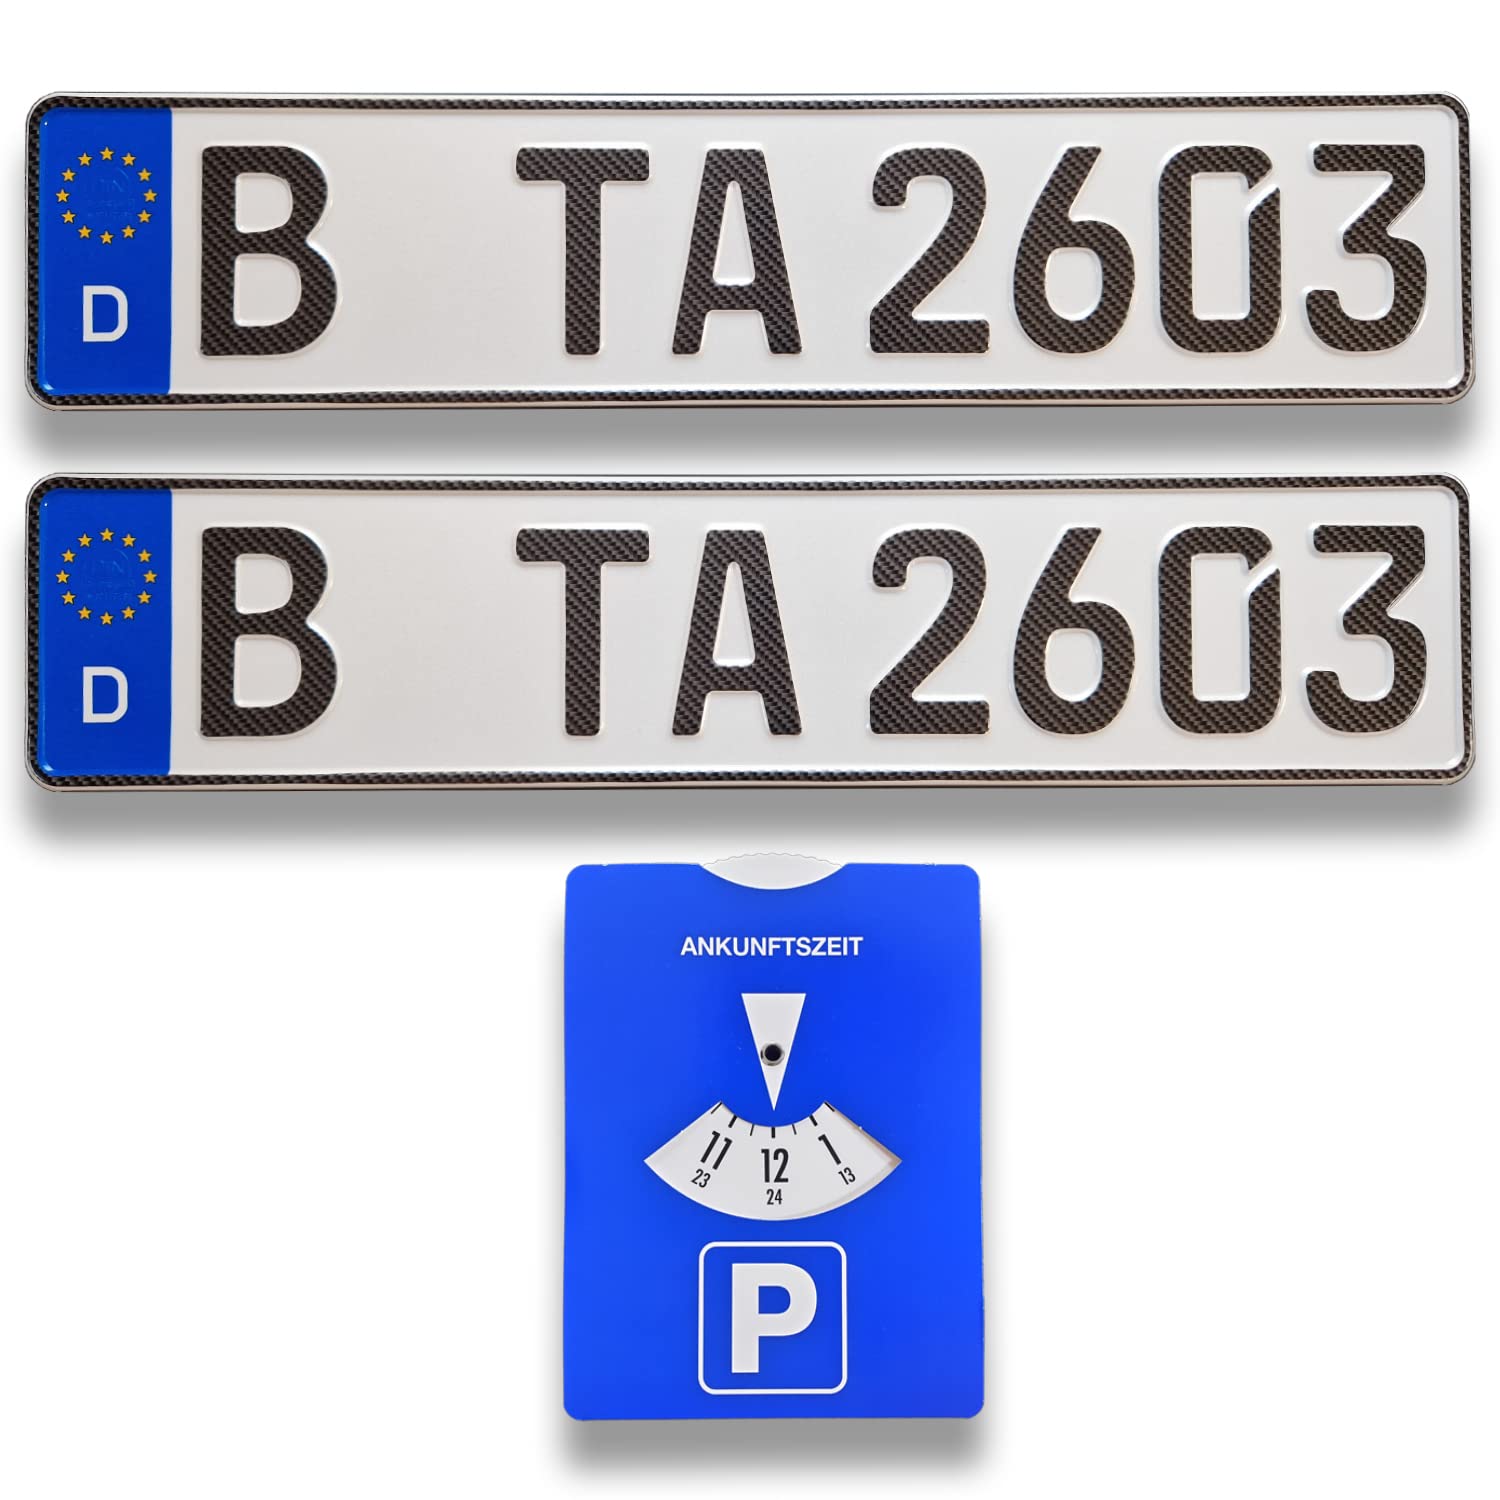 TA TradeArea 2 DIN-zertifiziertes Kfz-Kennzeichen in Carbon-Optik in der Standard-Größe 520x110 mm inklusive Parkscheibe passend für alle Deutschen Fahrzeuge von TA TradeArea